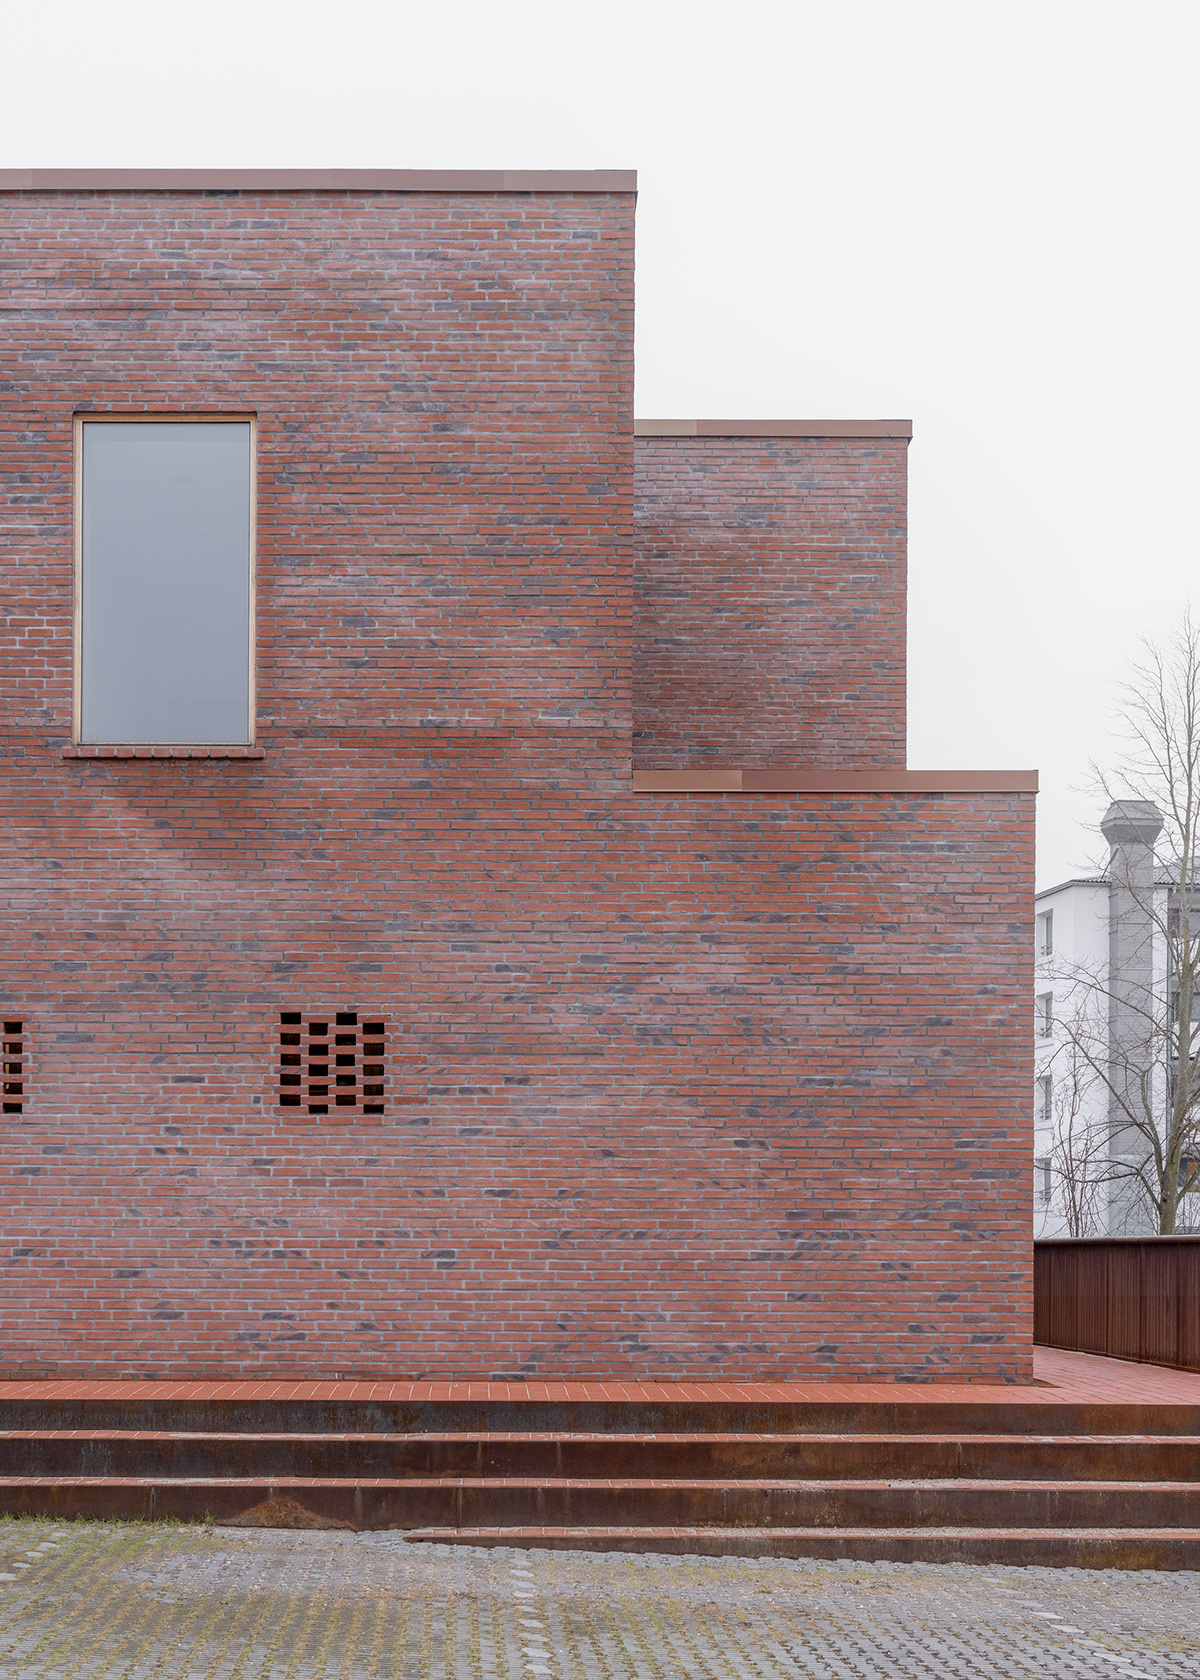 architecture church denmark Minimalism nordic Interior modern brick glostrup sognegård skala architecture